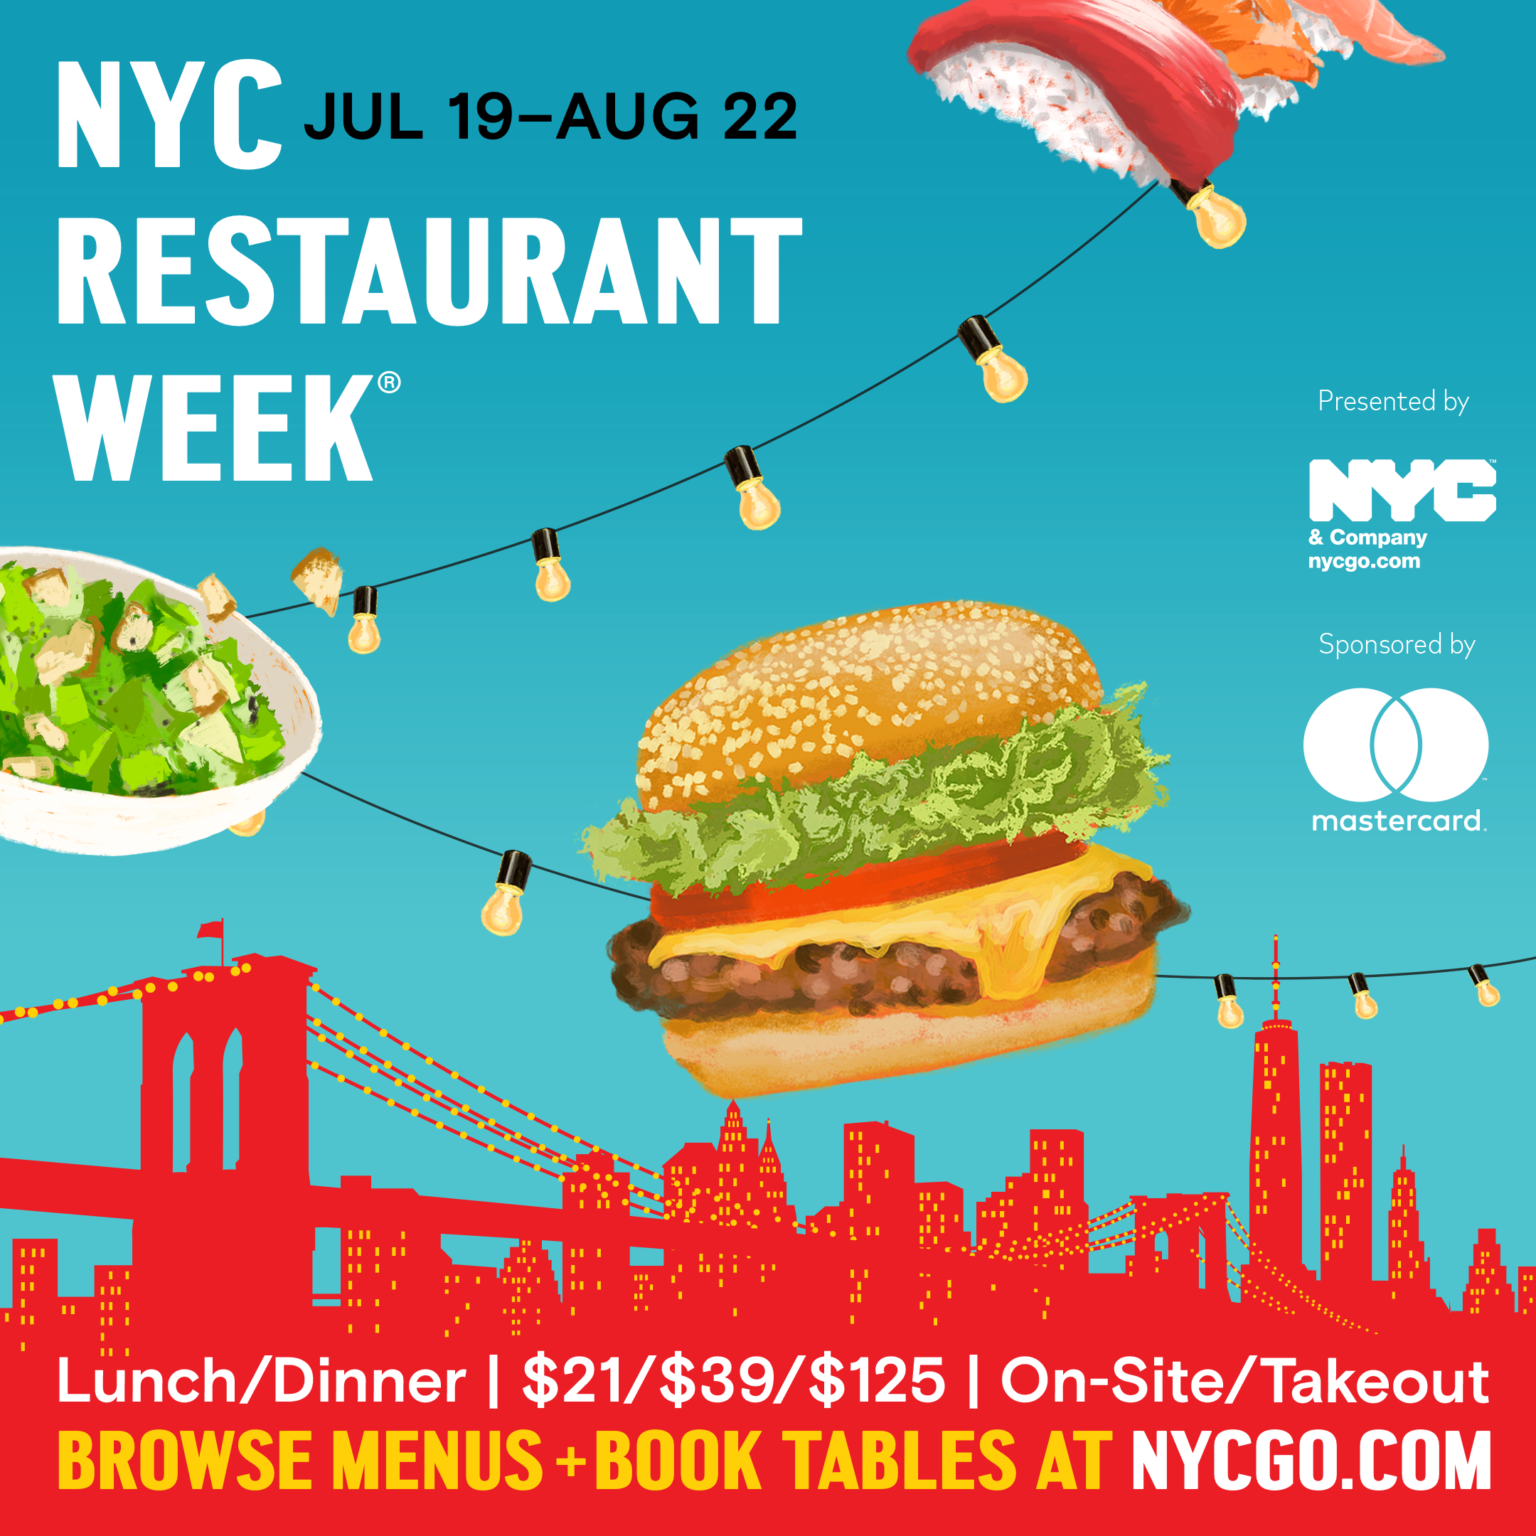 Comienza una nueva edición de NYC Restaurant Week® para disfrutar del